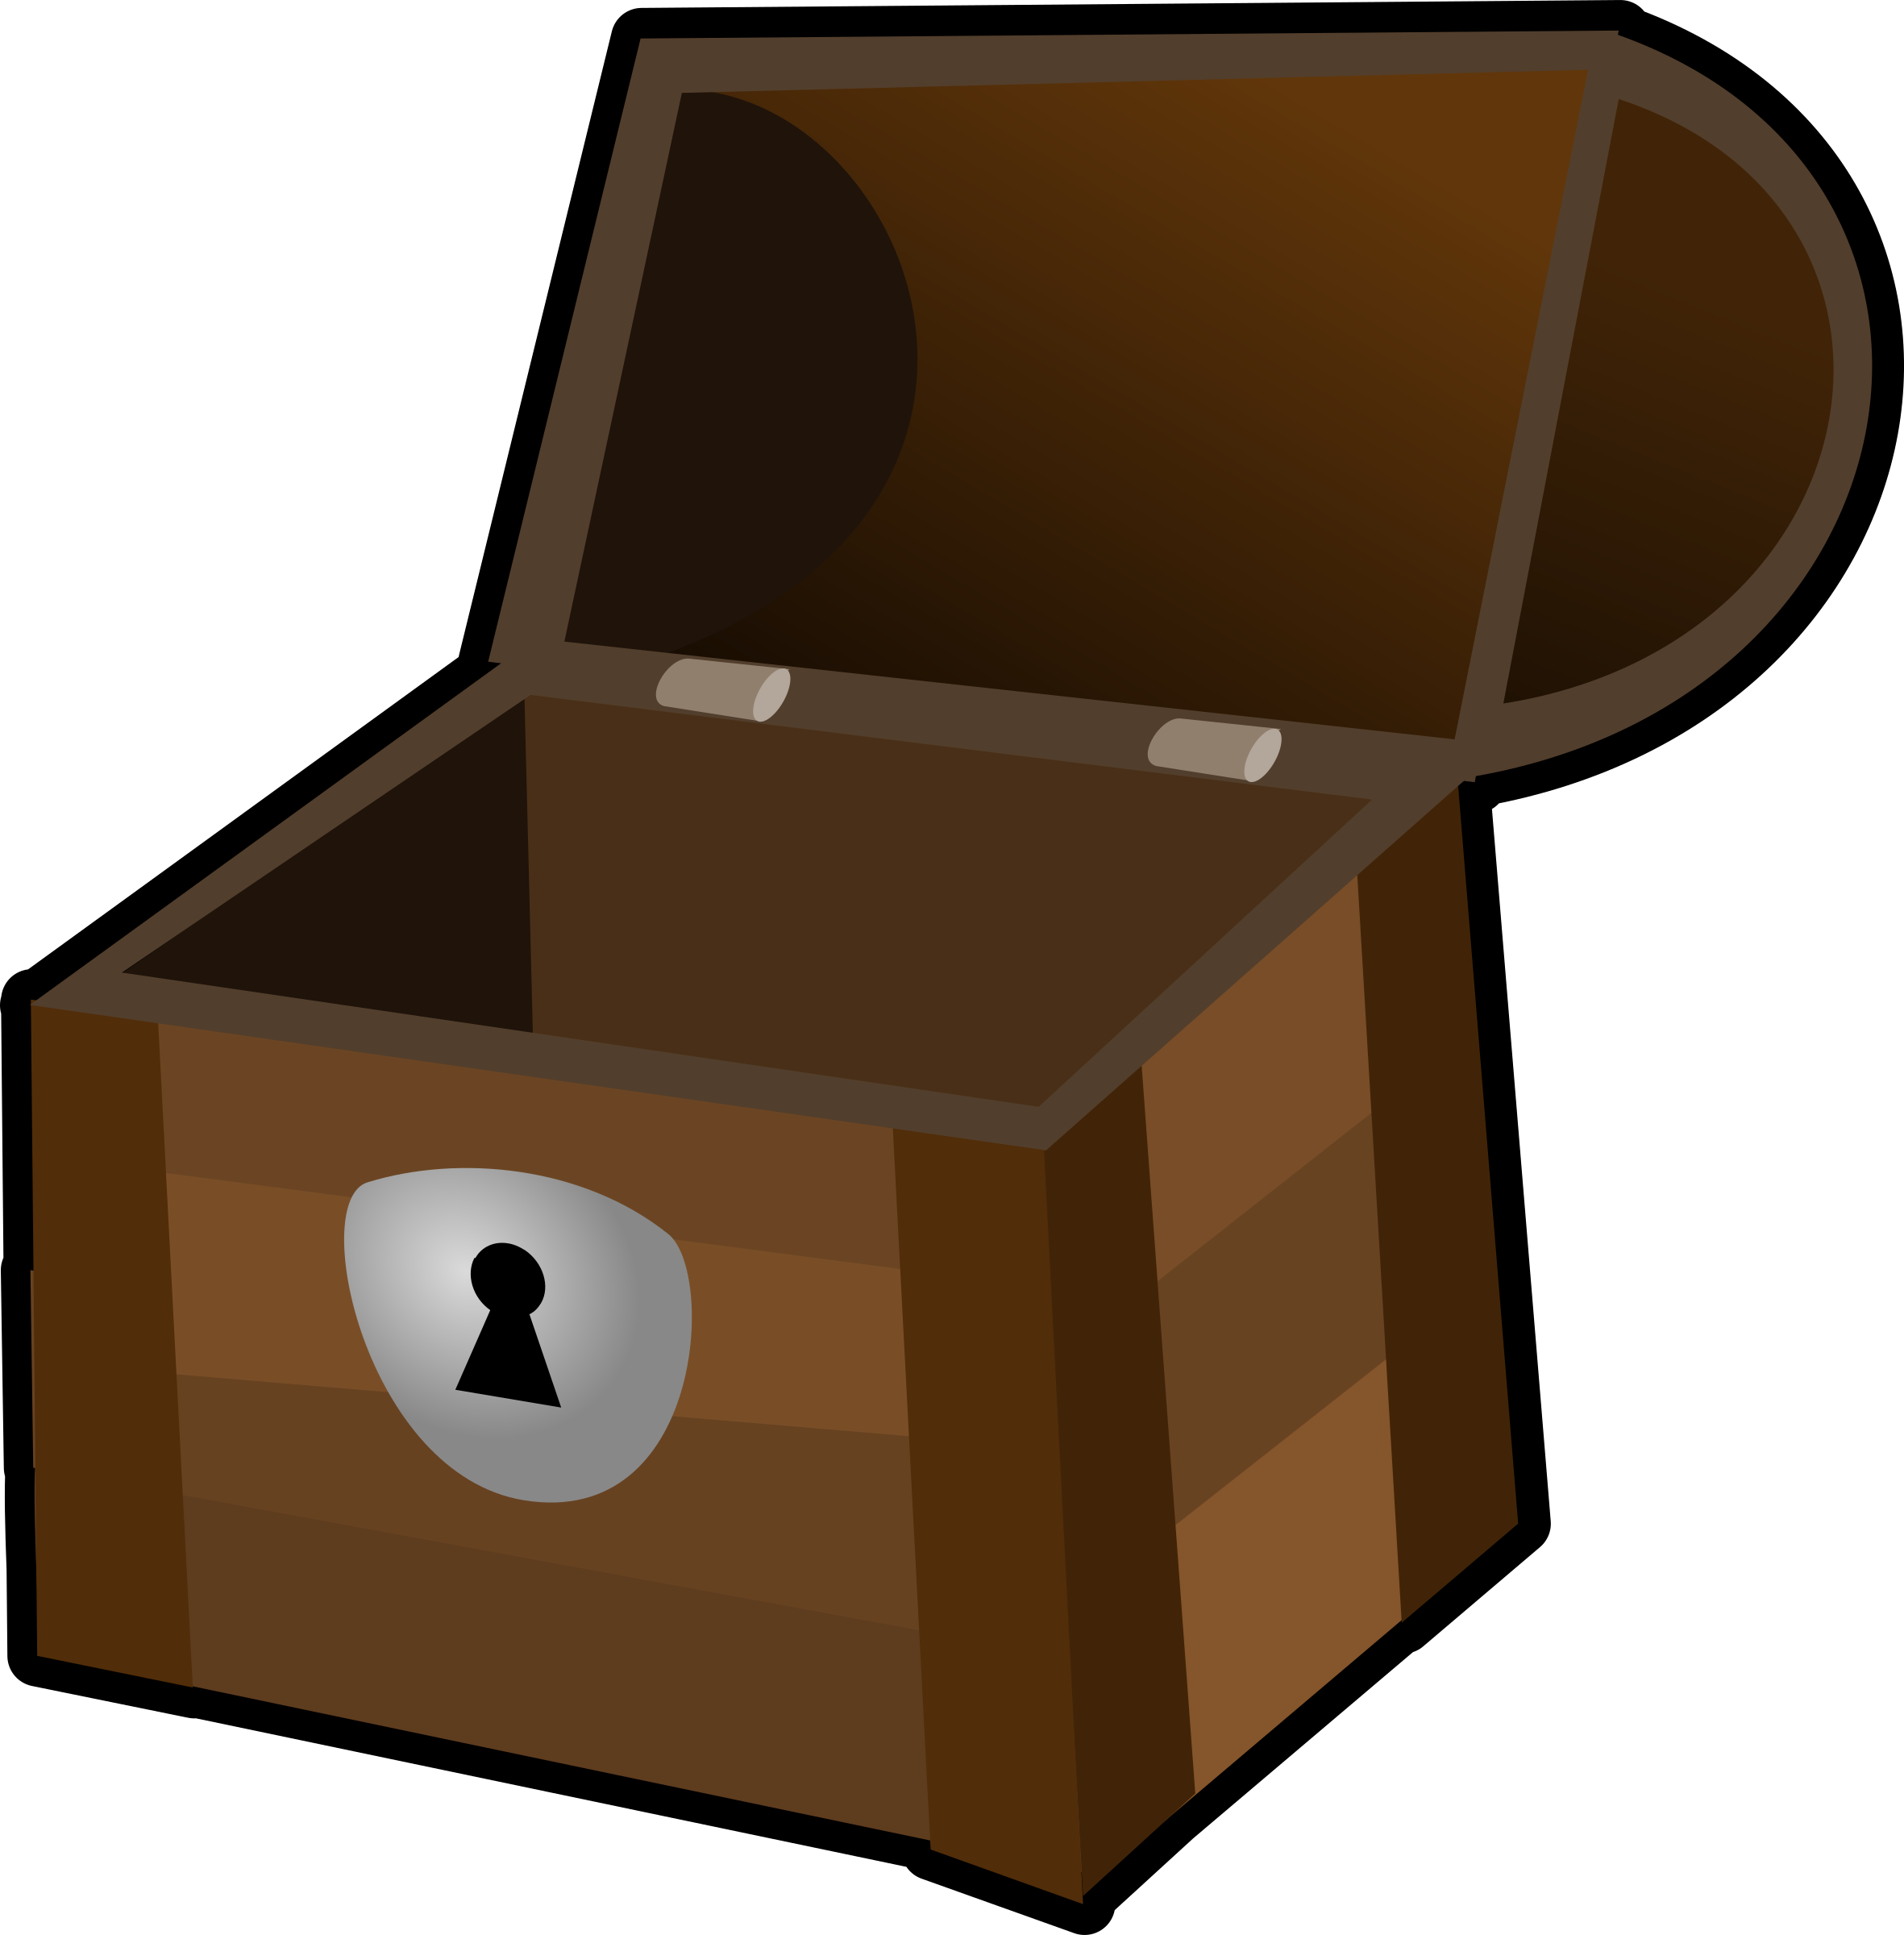 Chest, Treasure, Box, Container, Wooden, Pirate, Open - Treasure Chest Clip Art (2362x2400)